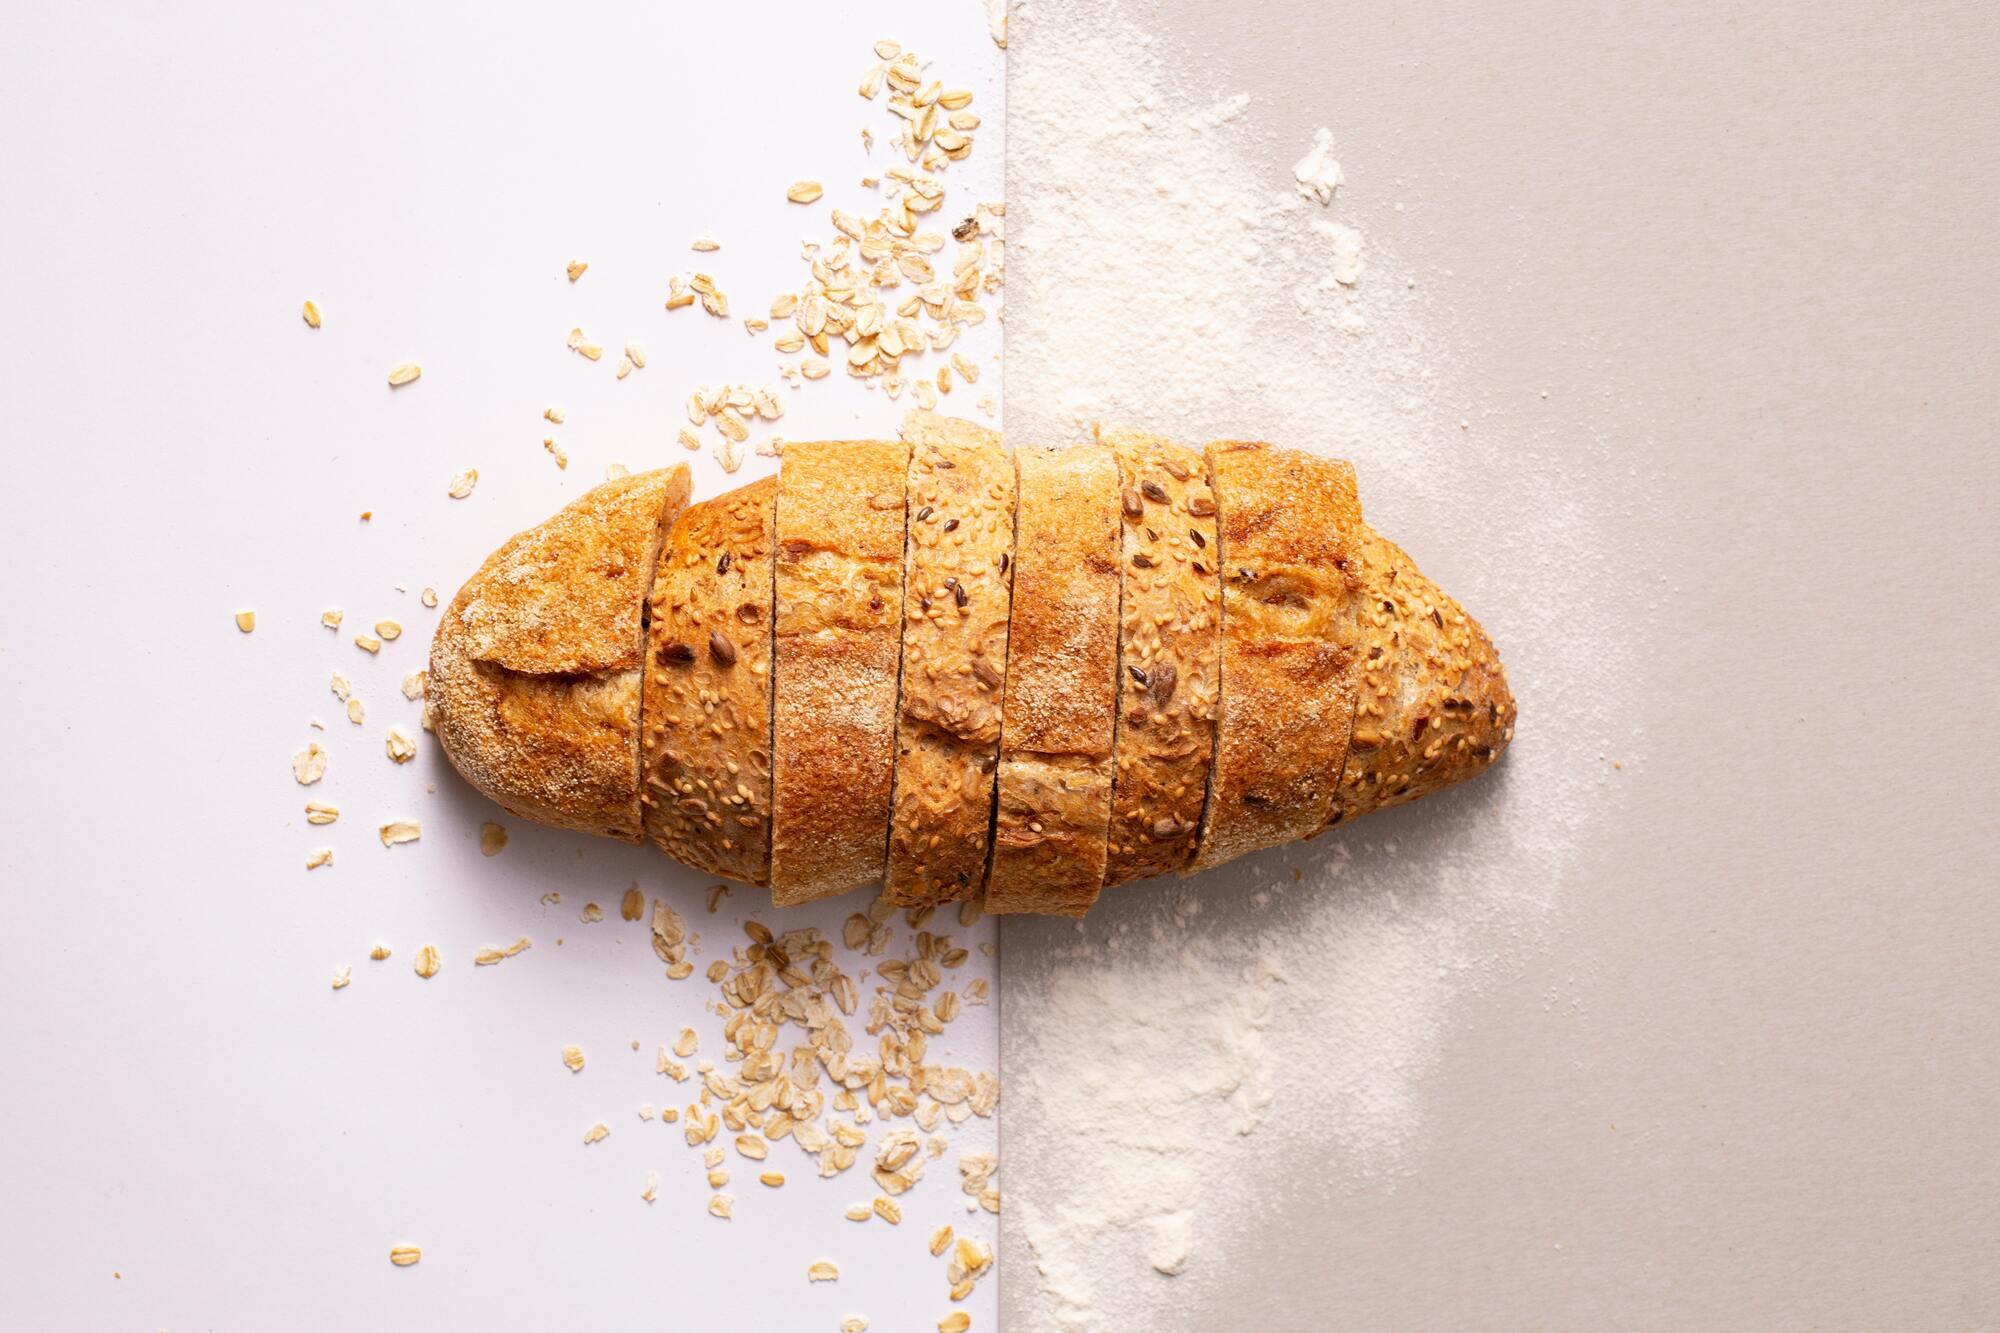 Як правильно заморозити хліб